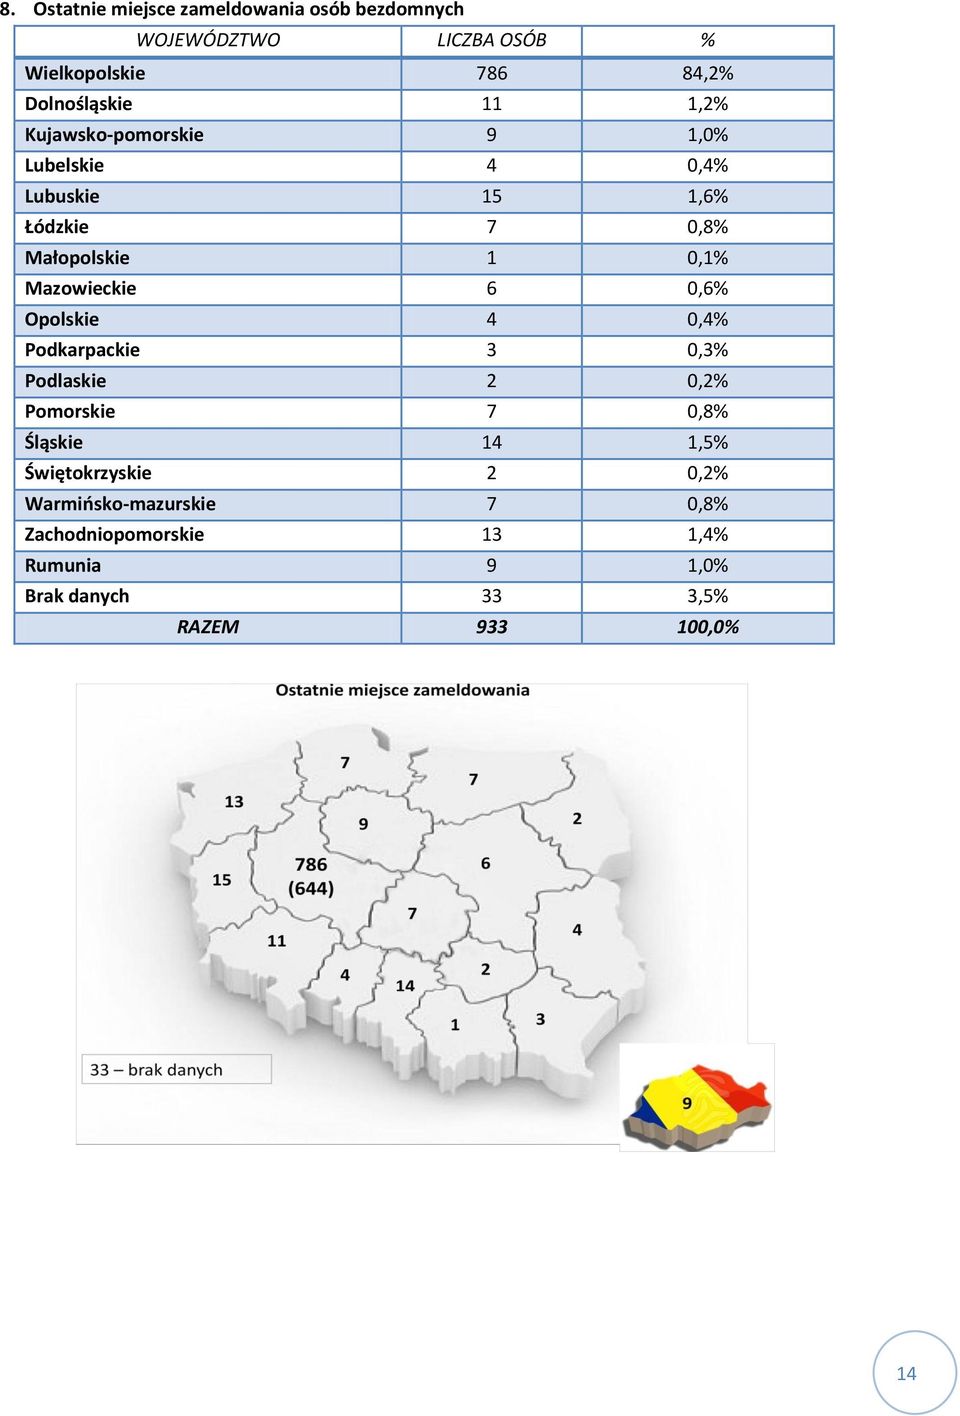 Małopolskie,% Mazowieckie 6,6% Opolskie 4,4% Podkarpackie,% Podlaskie 2,2% Pomorskie 7,8%